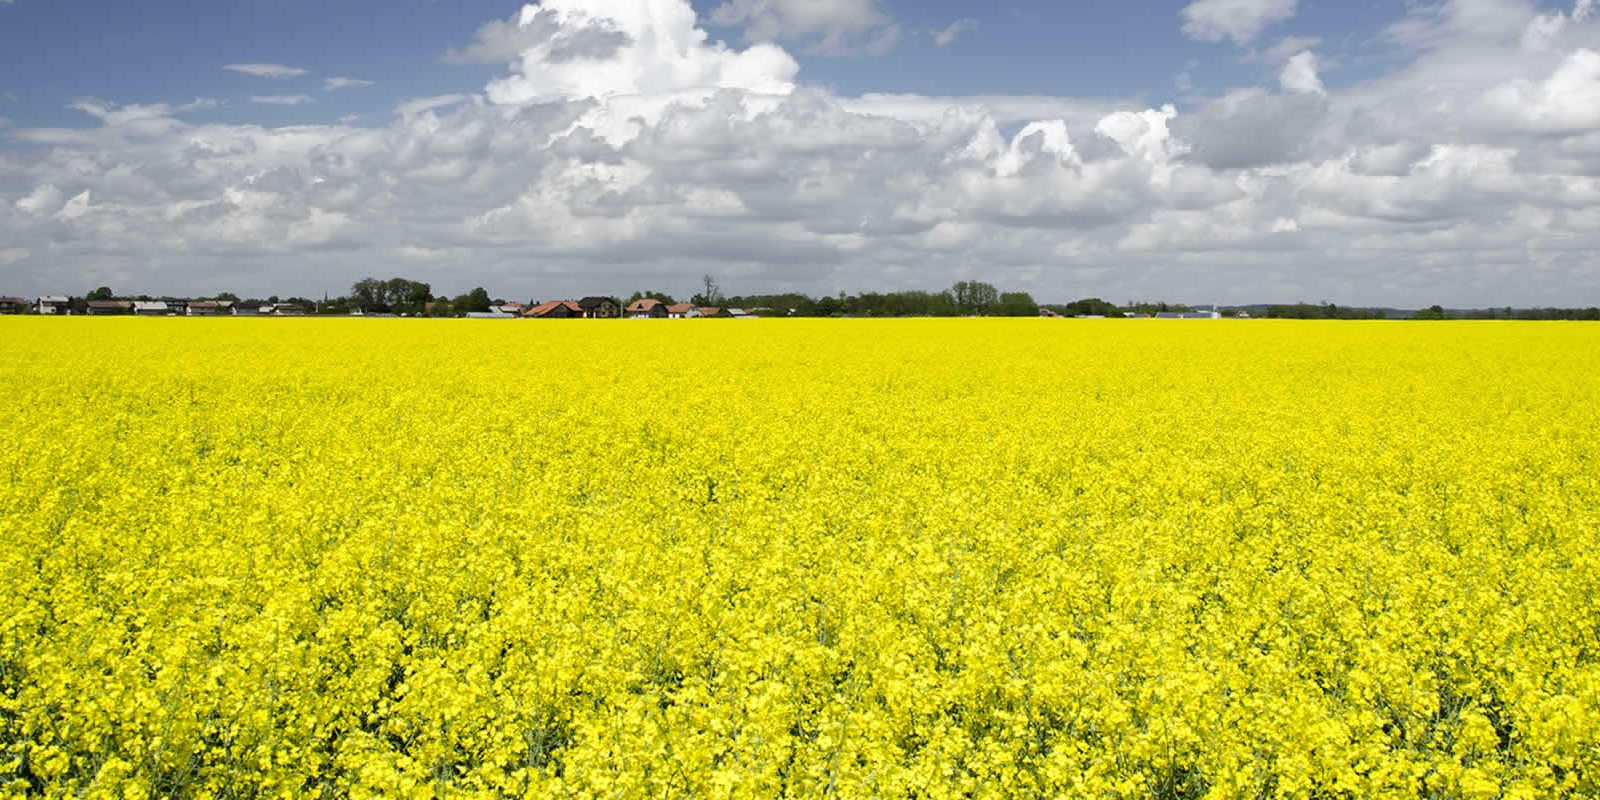 Field of Mustard in Bloom